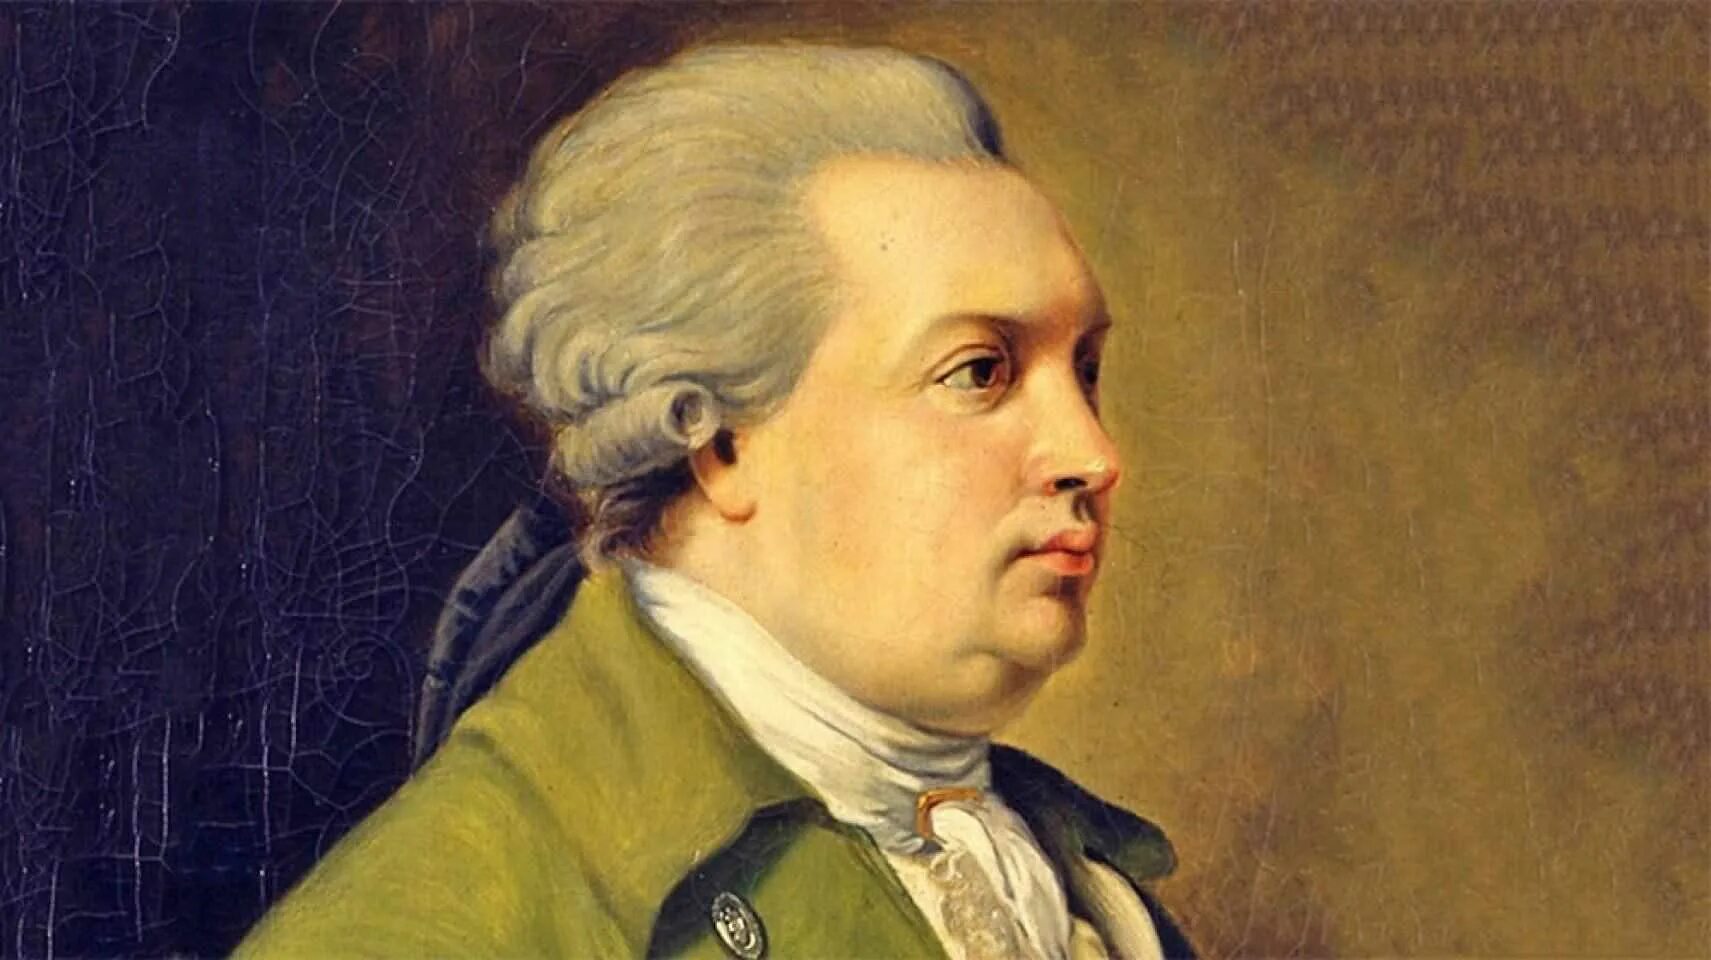 Д.И. Фонвизин (1745-1792). Енис Иванович Фонвизин.